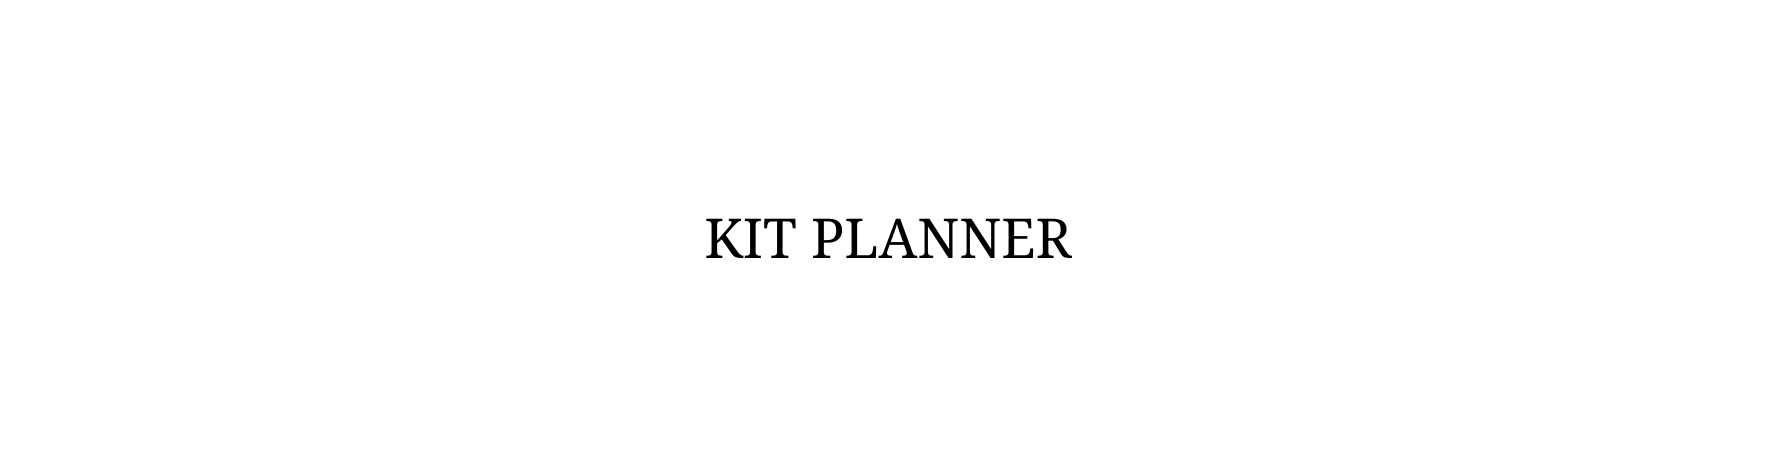 Kit planner